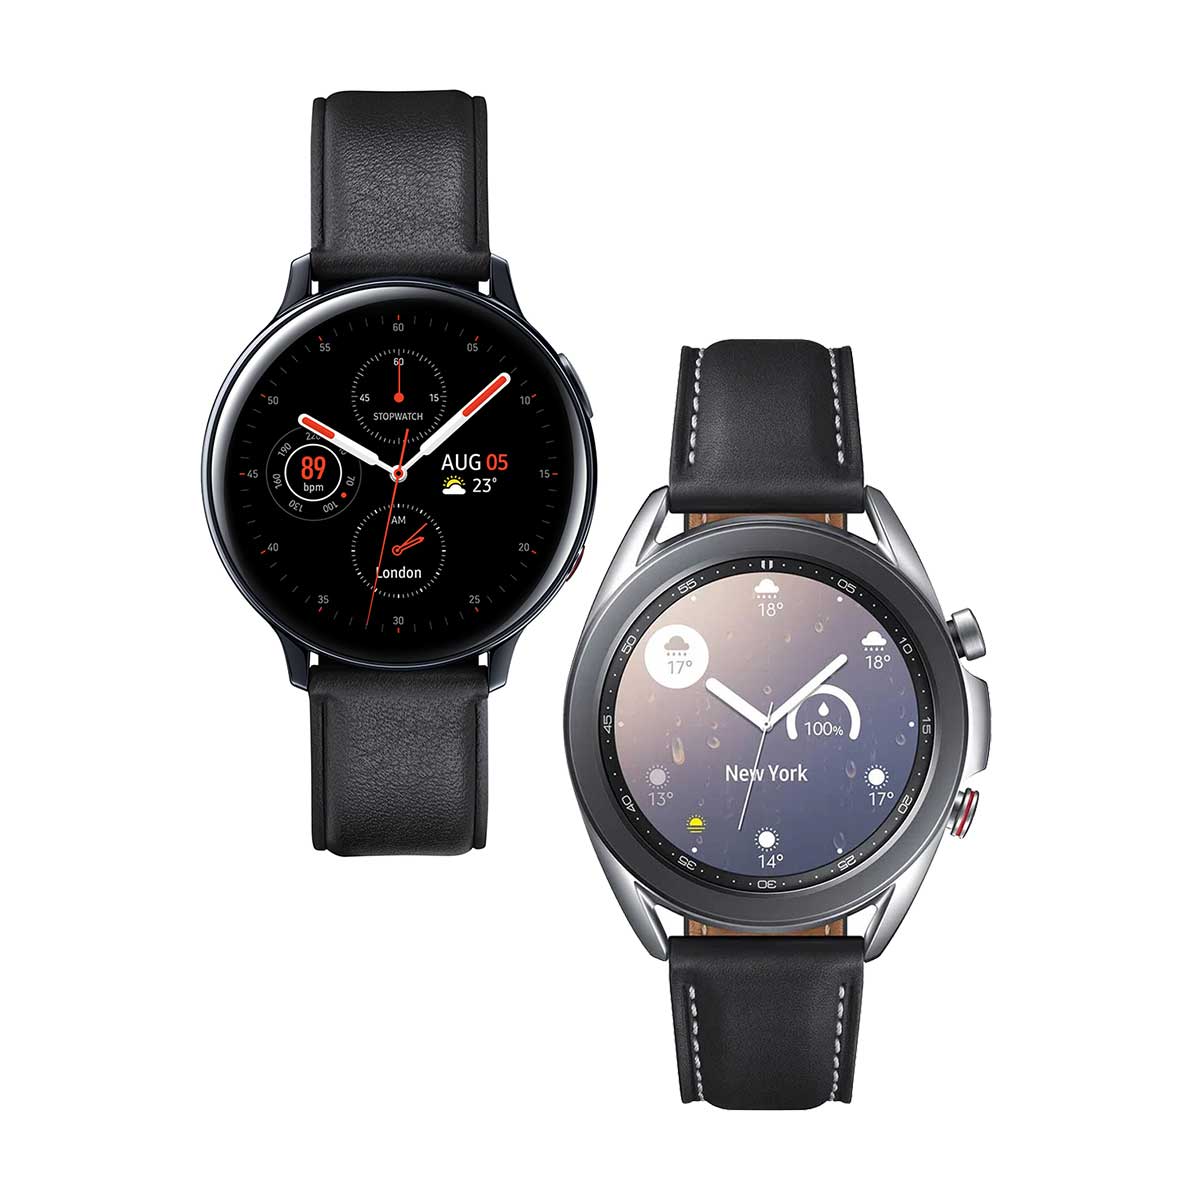 kit-smartwatch-samsung-2-pecas--galaxy-watch3-41mm-lte-prata---galaxy-active2-lte-44mm-preto-1.jpg